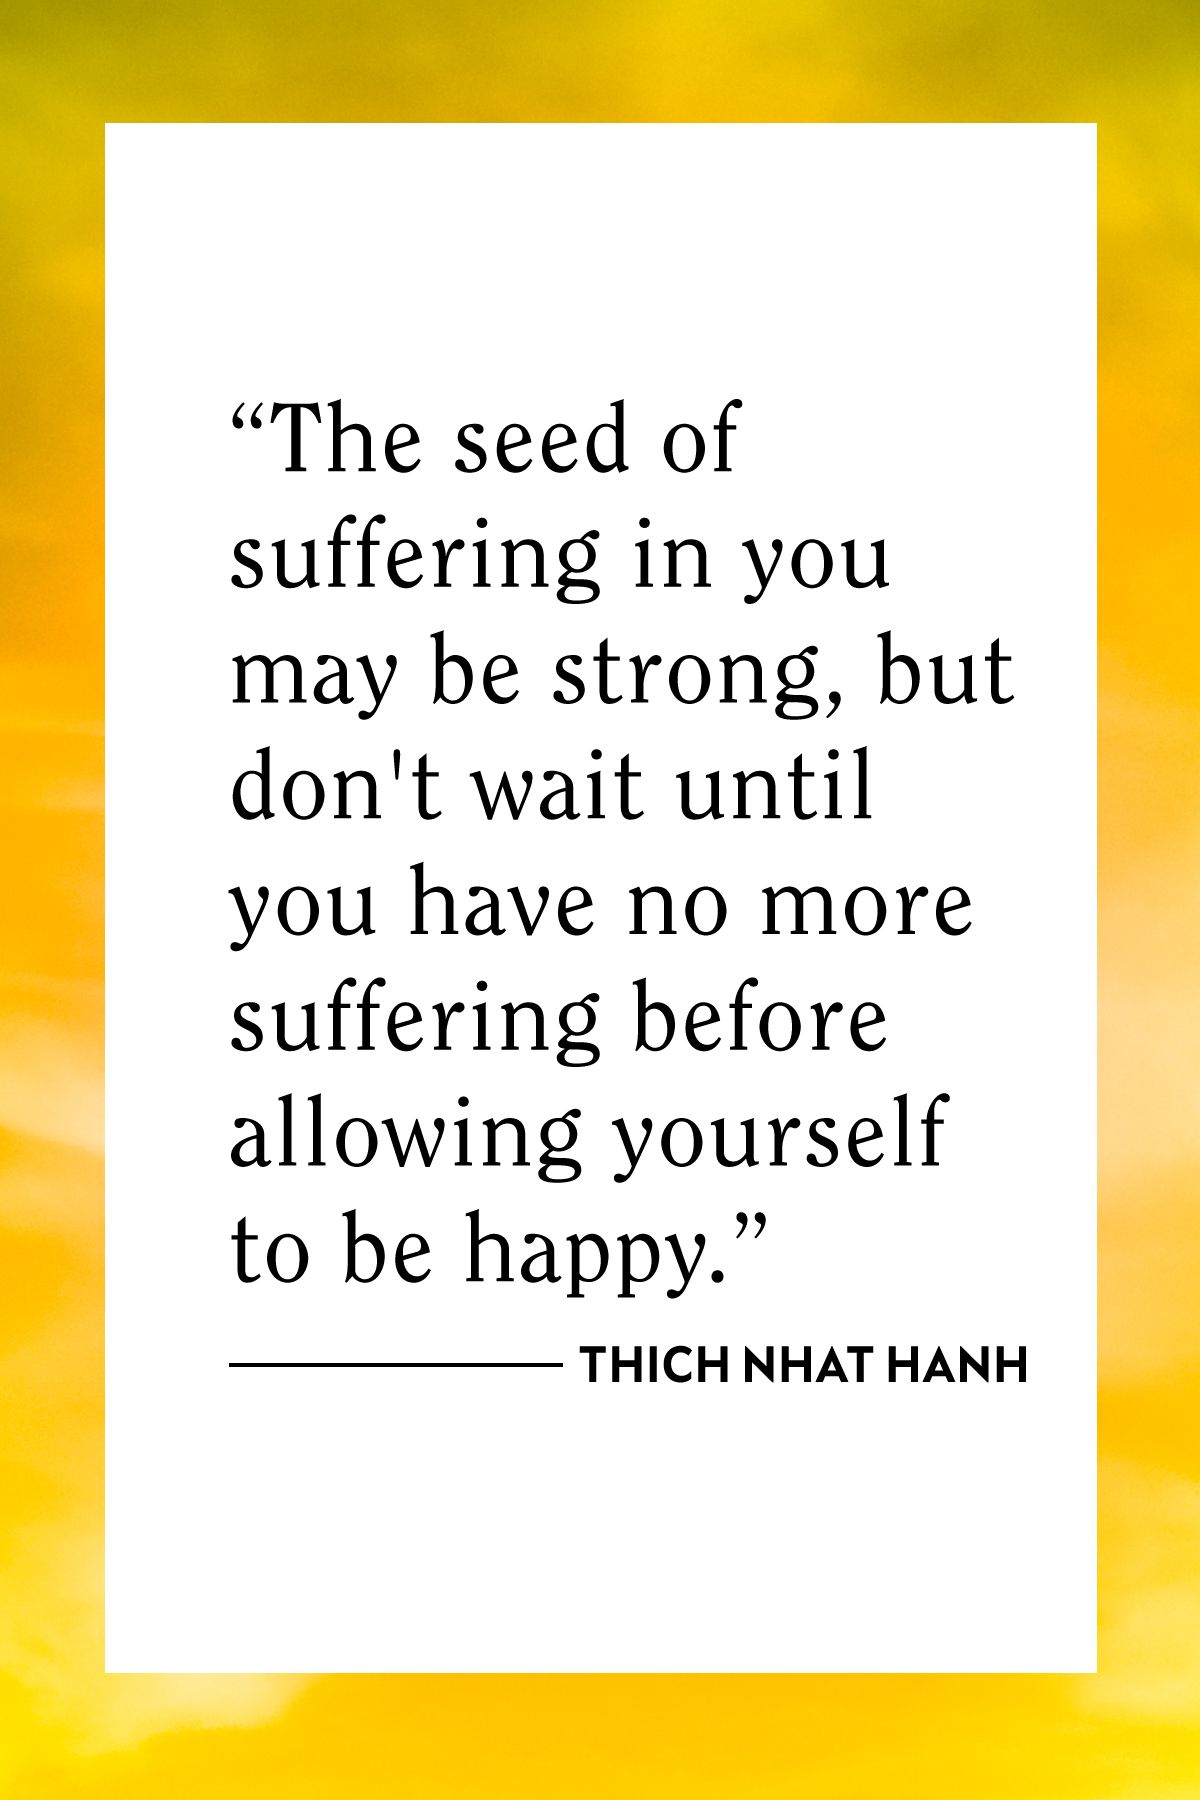 100 Thich Nhat Hanh цитаталары (азап, бақыт және босату)